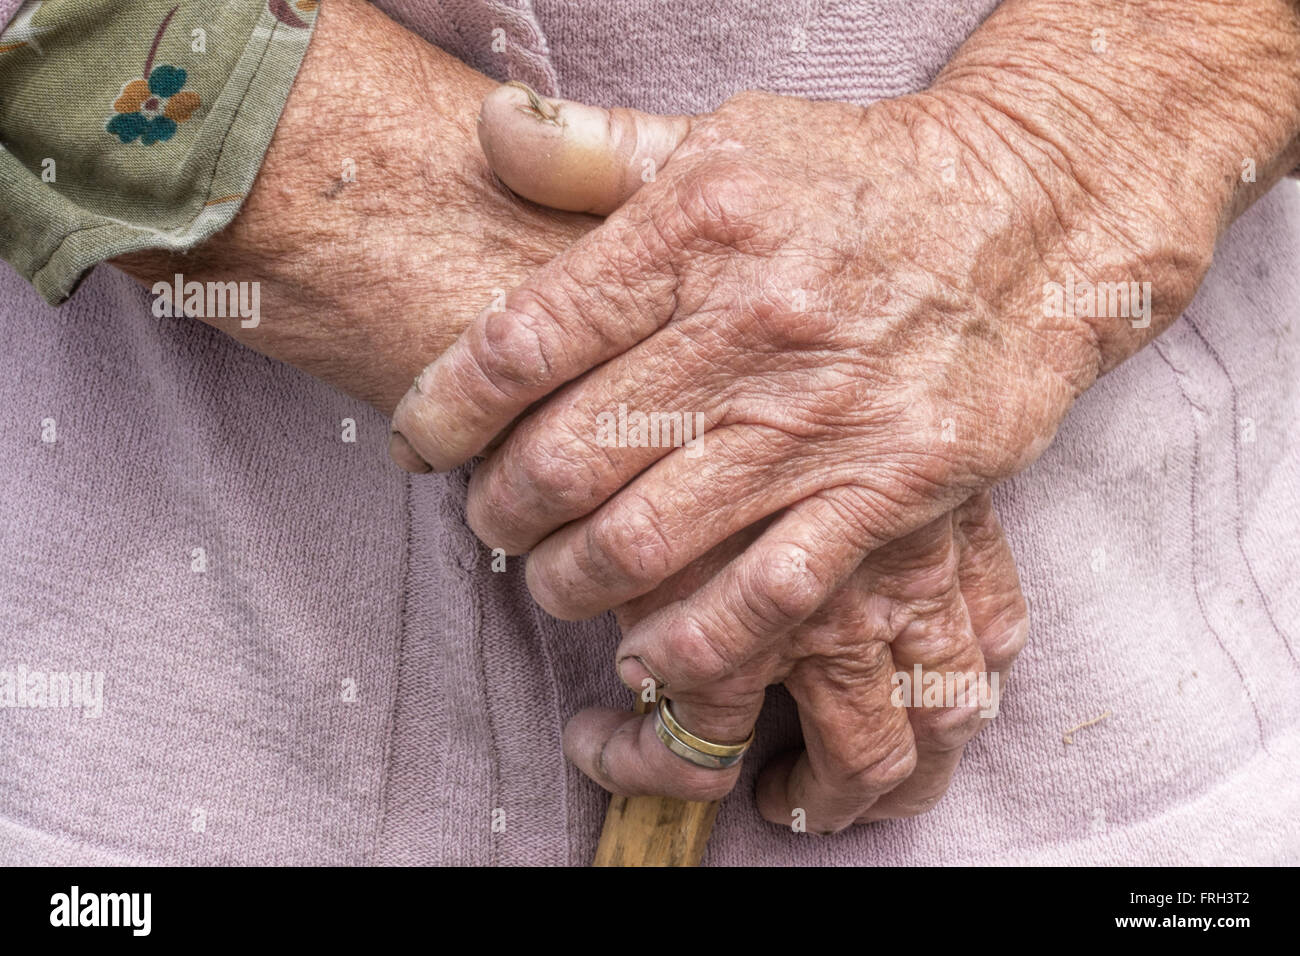 Proceso de Envejecimiento - muy vieja mujer senior manos piel arrugada Foto de stock